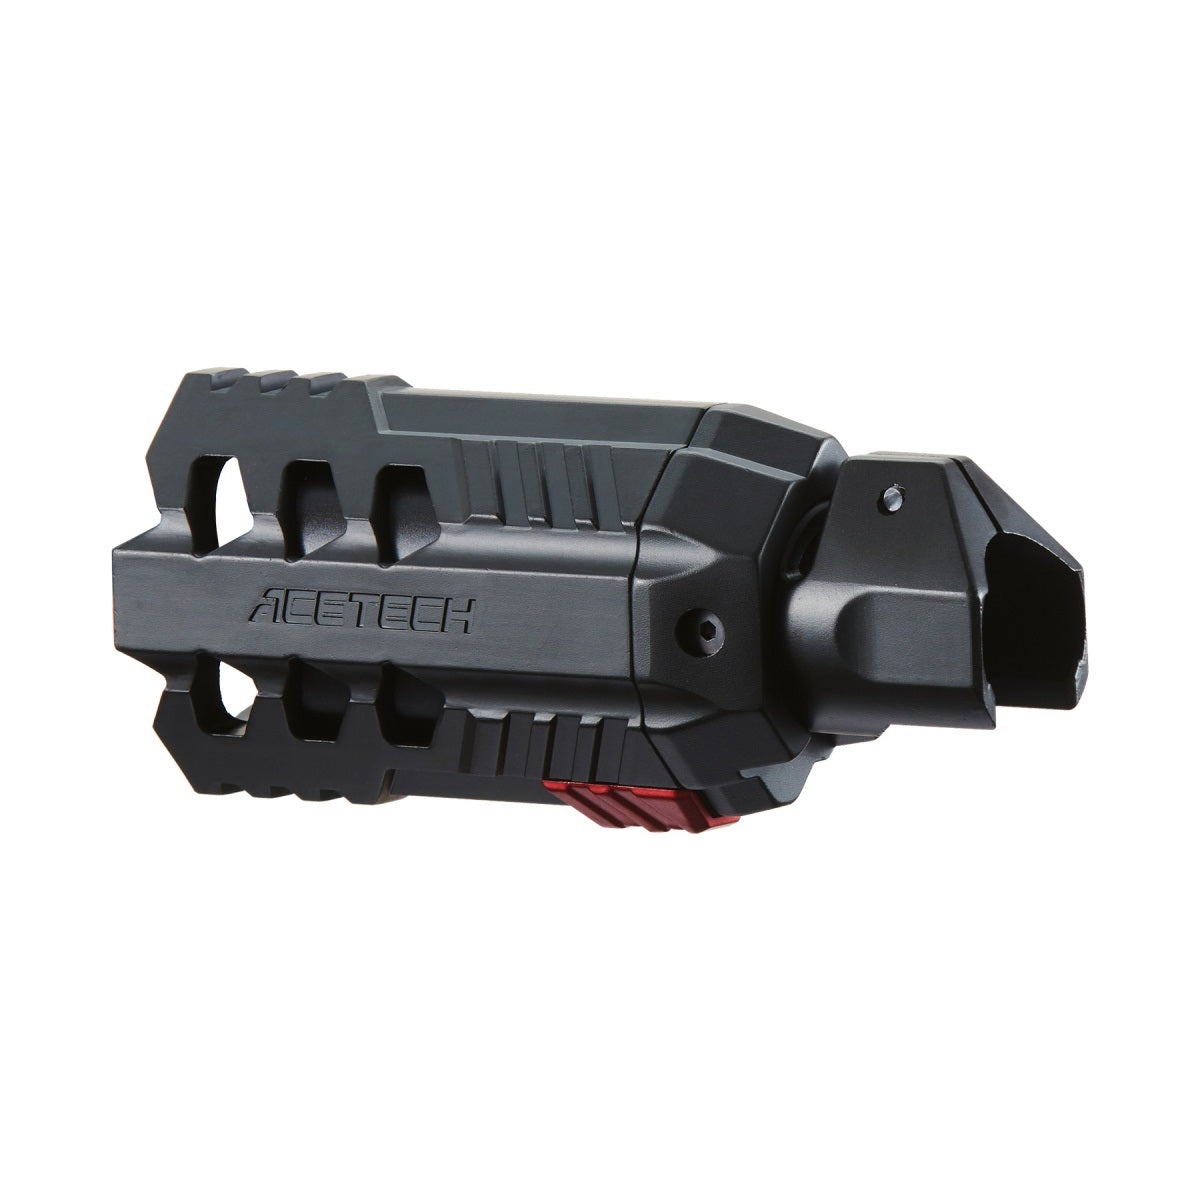 AceTech Quark QD M870 Shotgun Tracer Unit (Color: Black) - ssairsoft